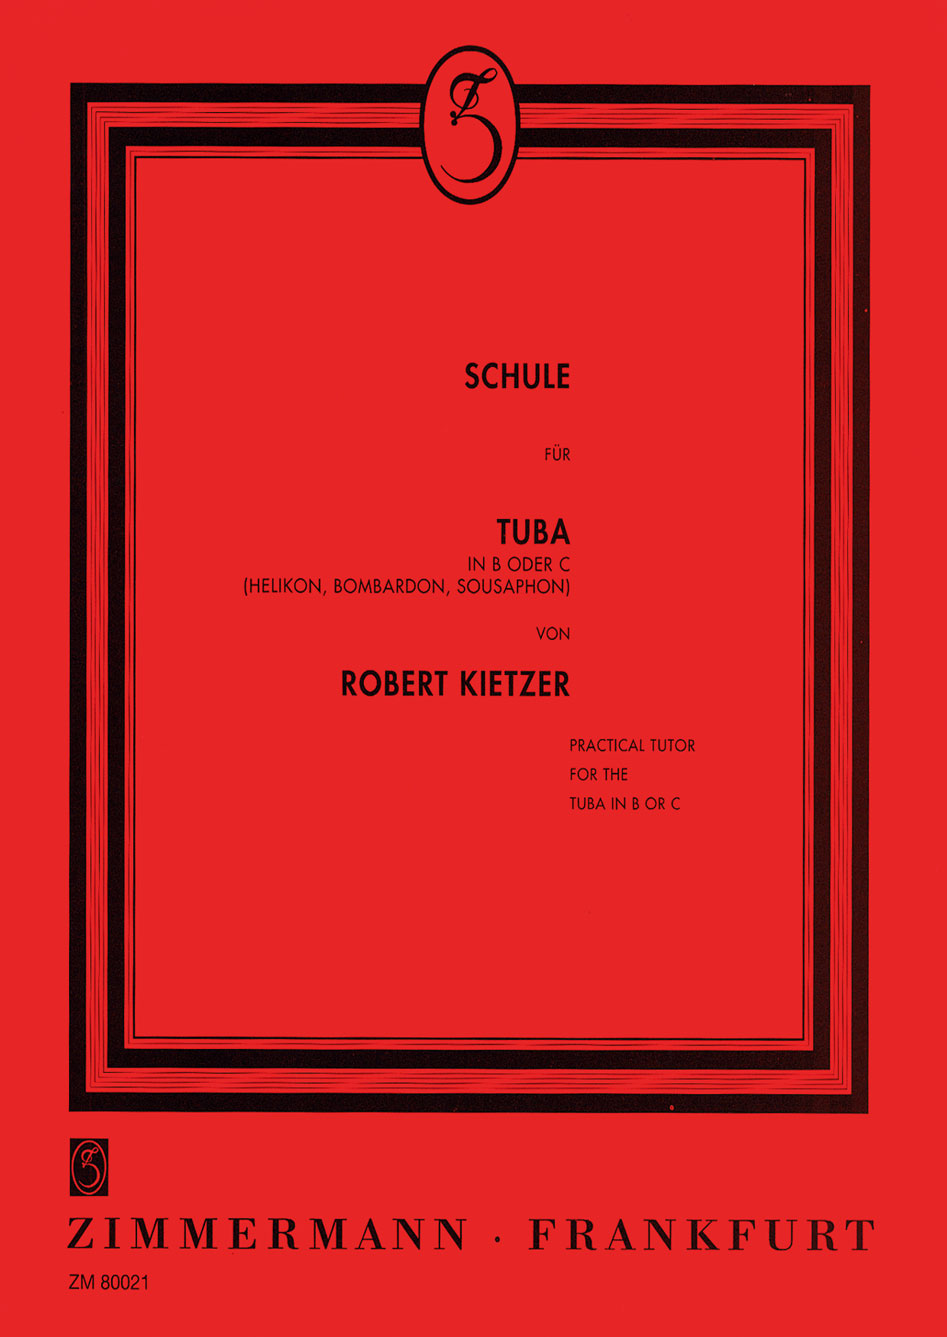 Robert-Kietzer-Schule-fuer-Tuba-in-B-und-C-Tuba-_0001.JPG